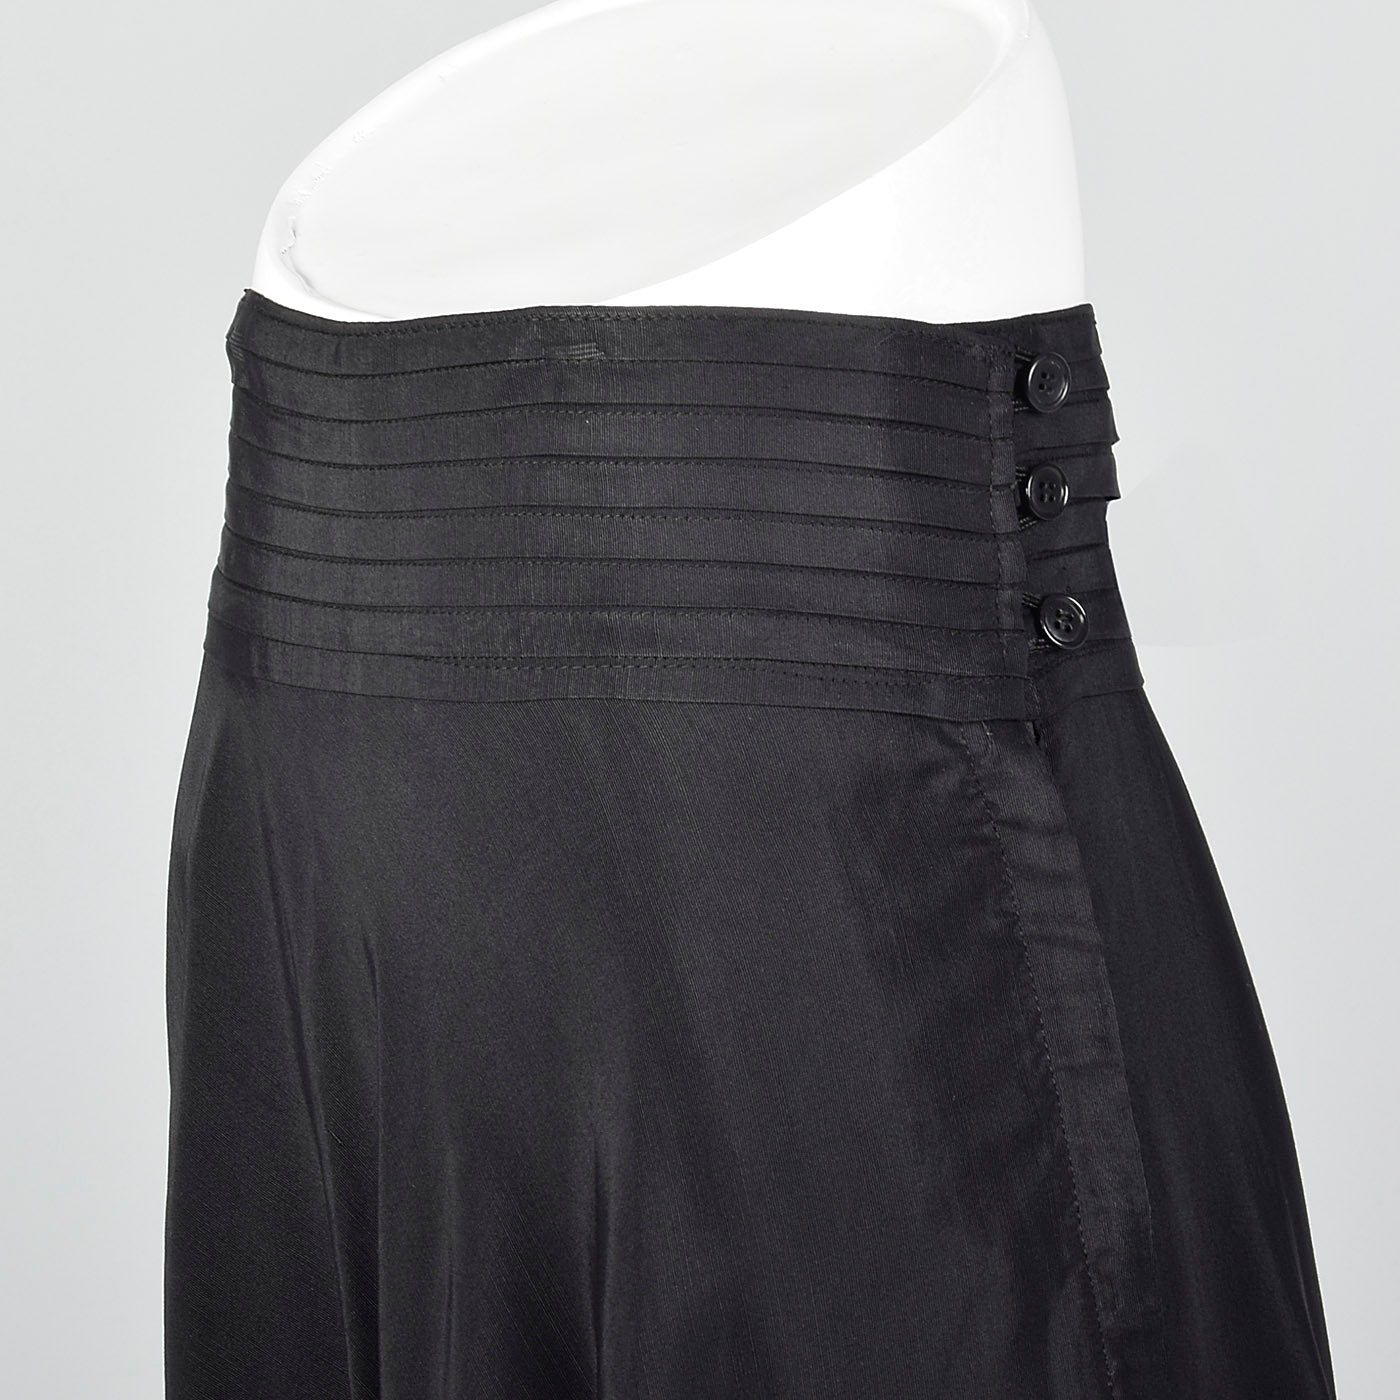 1950s Black Pleated Waistband Skirt